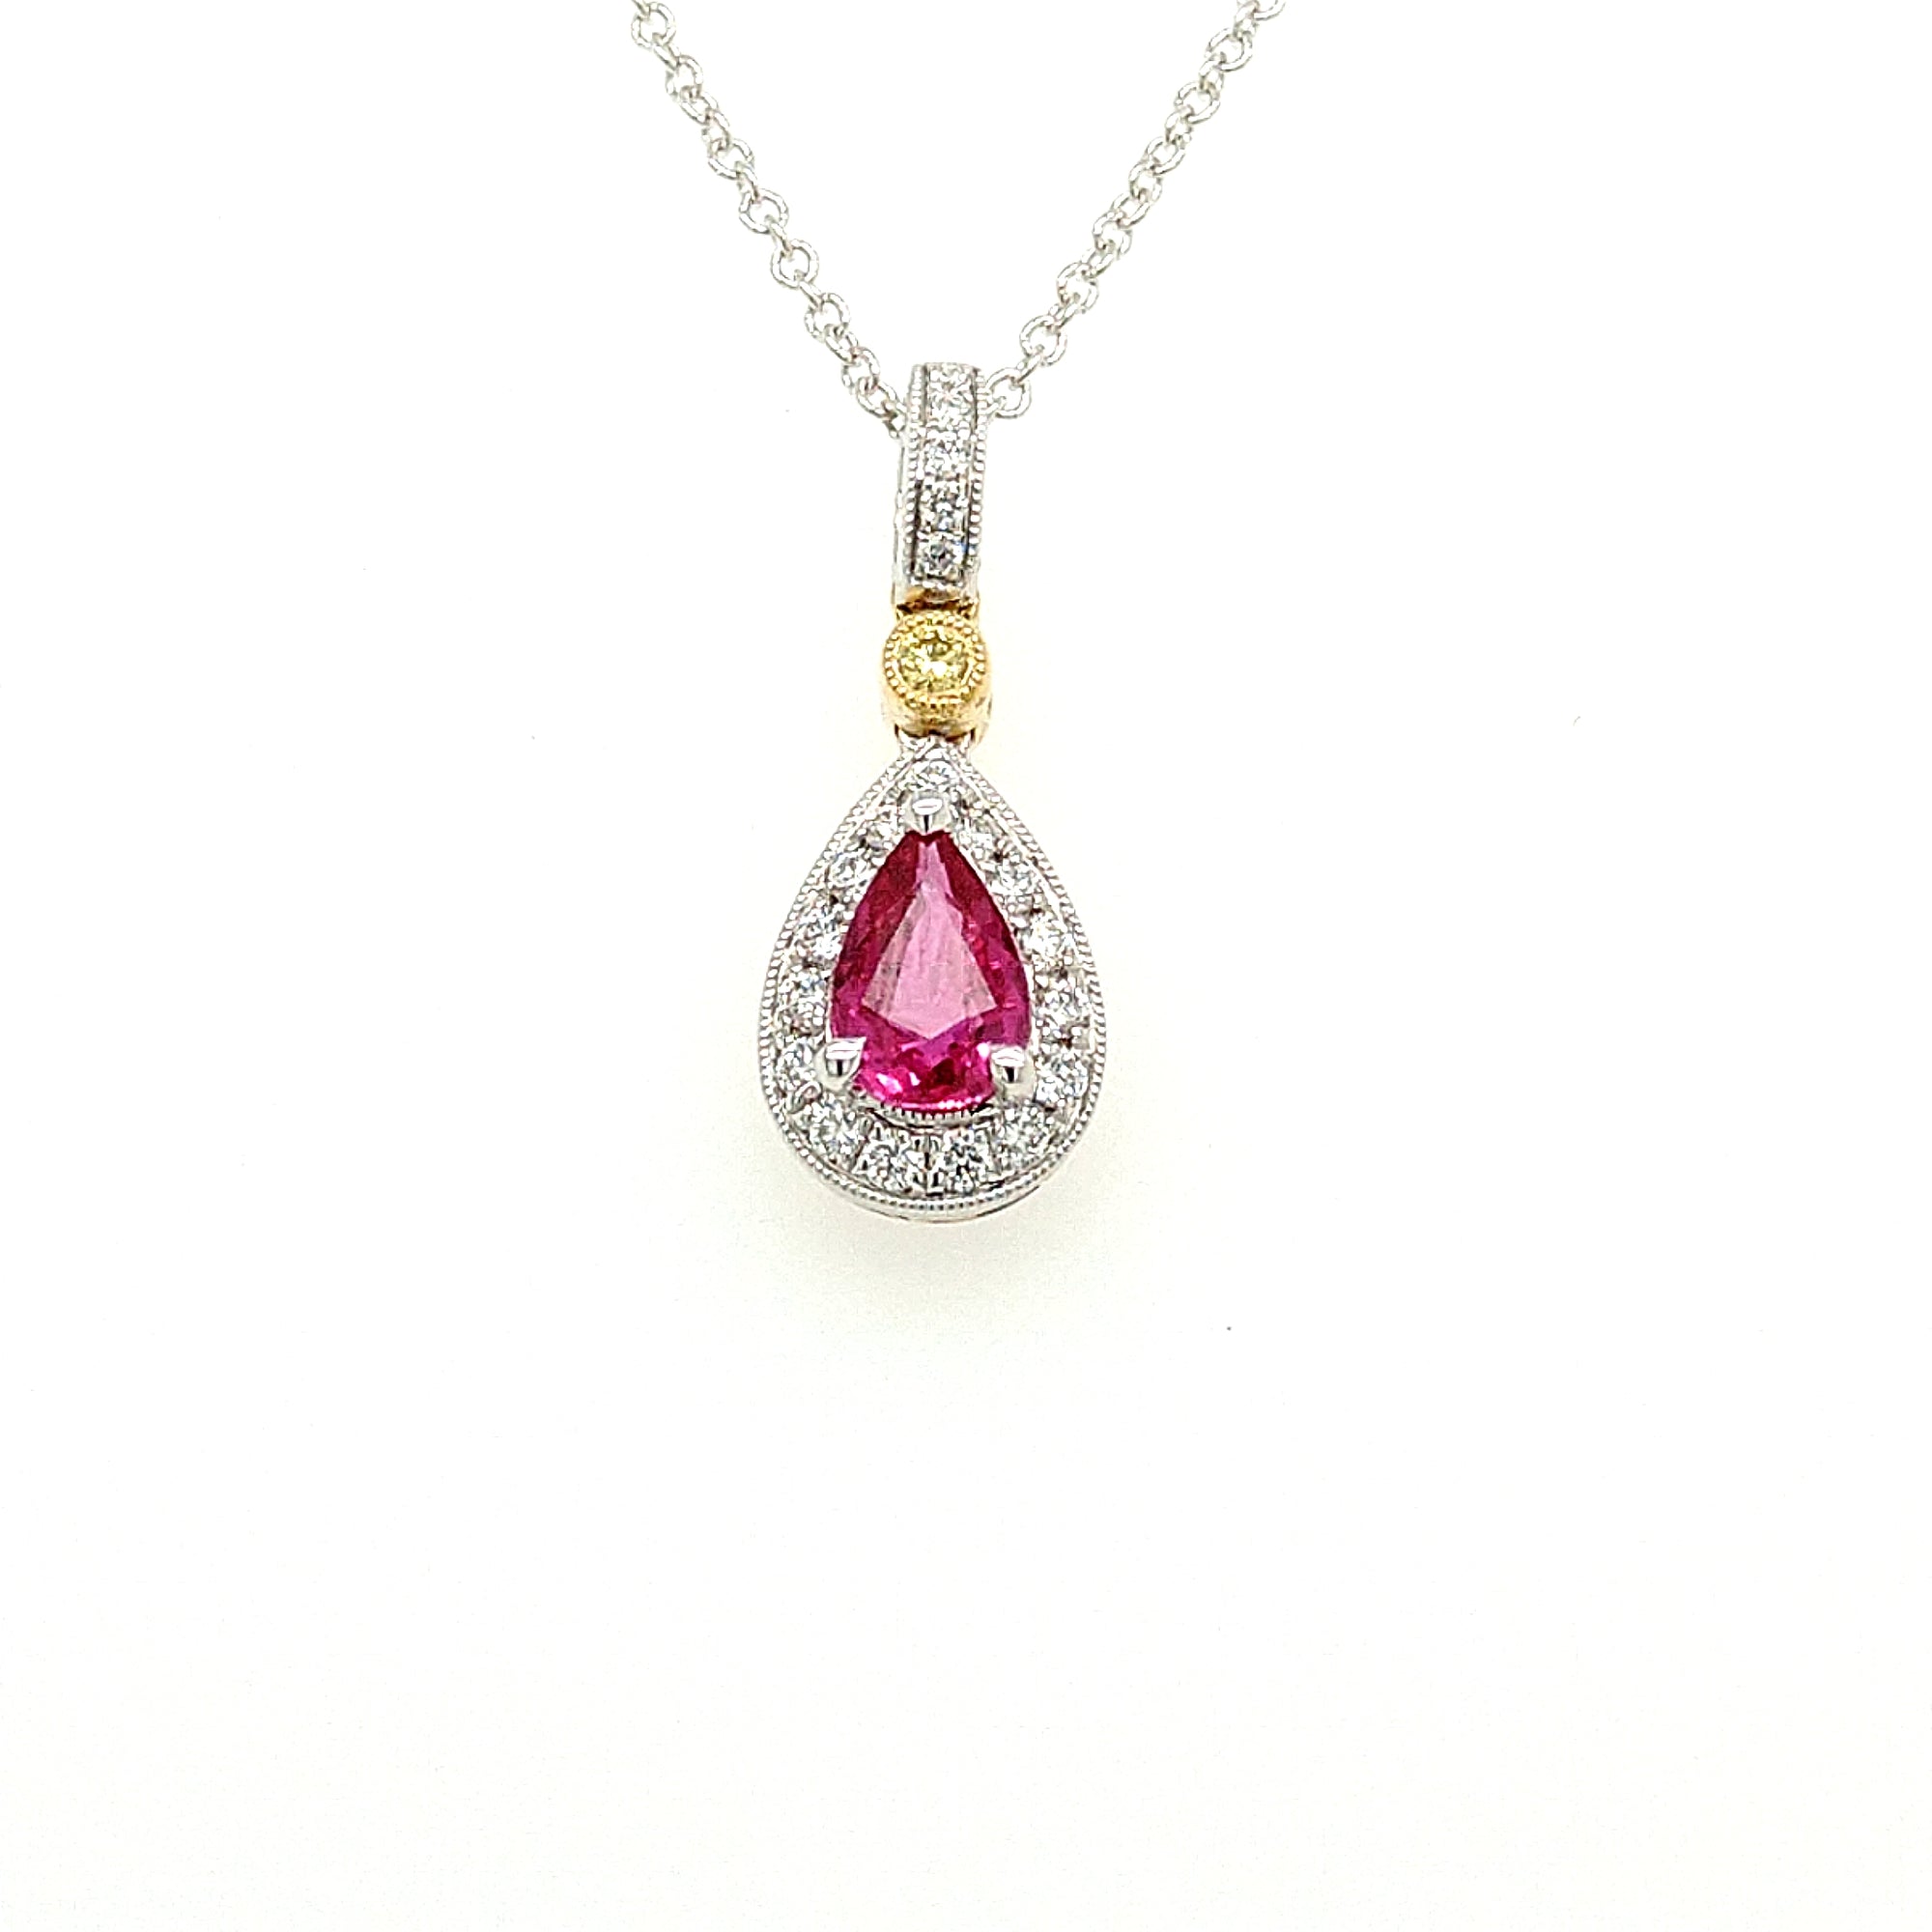 Simon G. 18K White Gold Ruby & Diamond Necklace